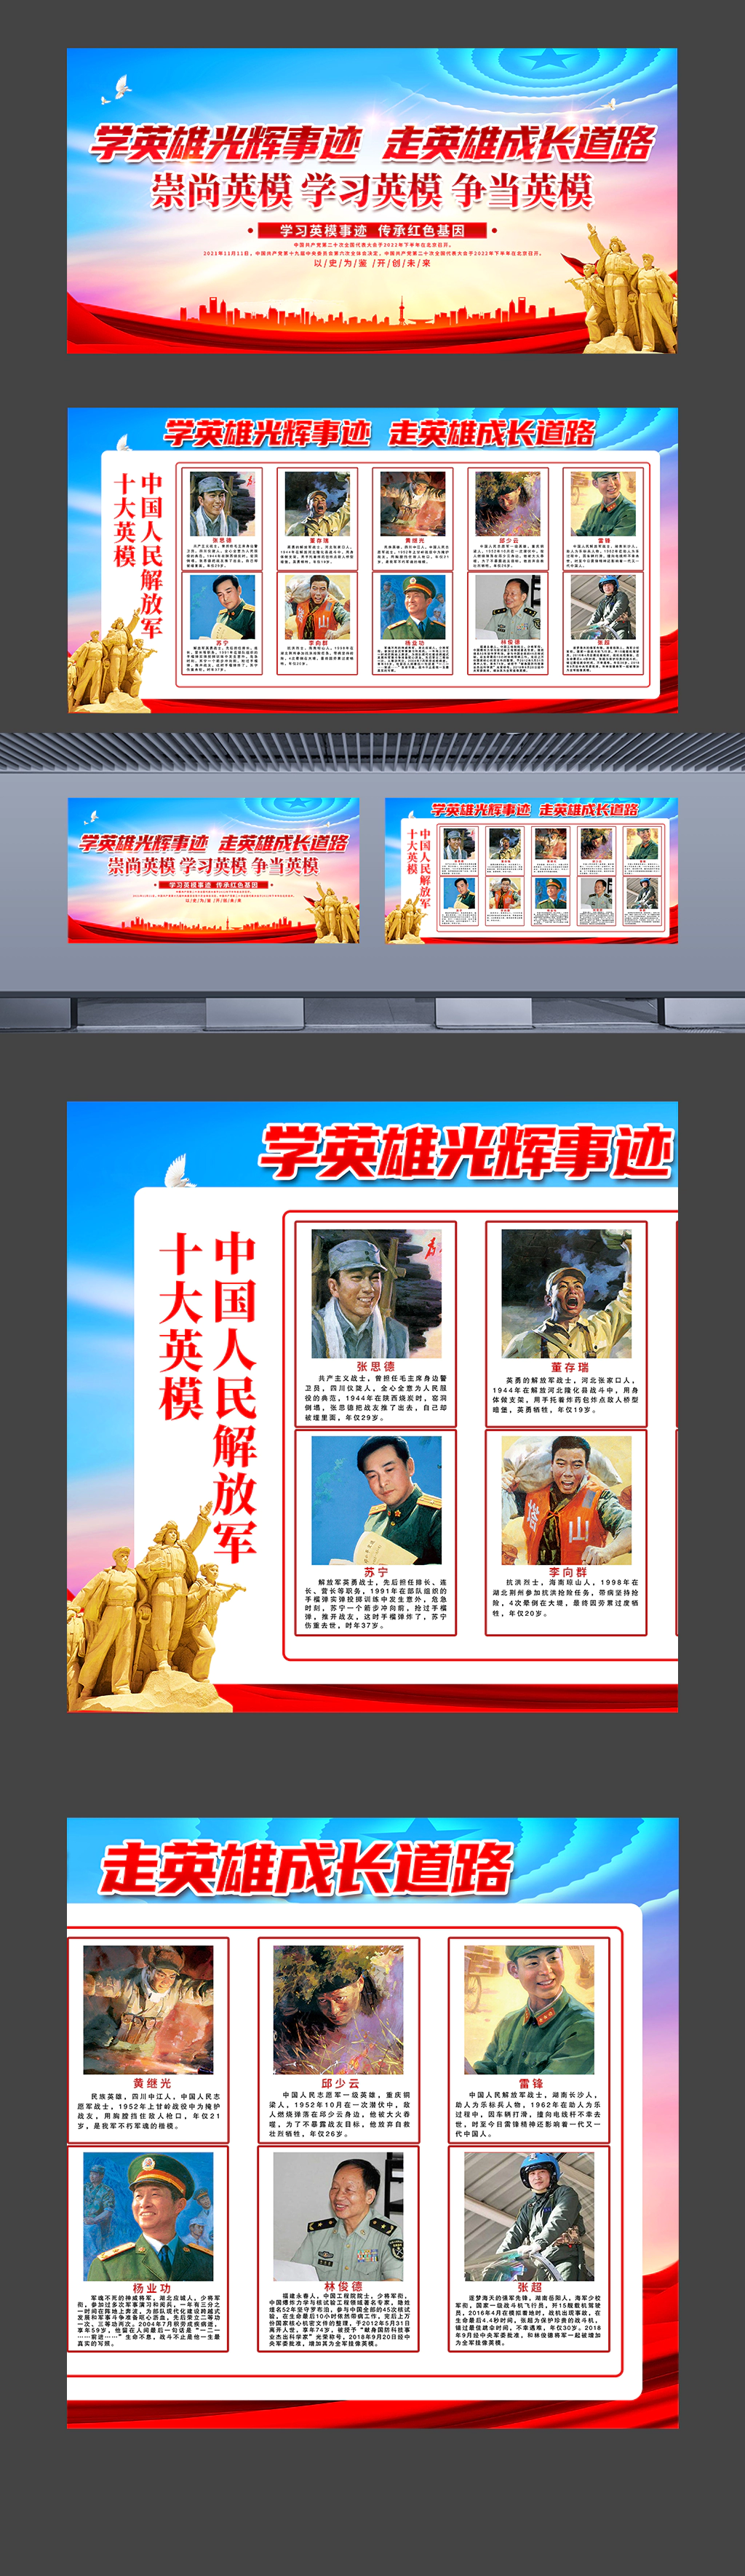 中国人民解放军十大英模军队部队宣传展板海报